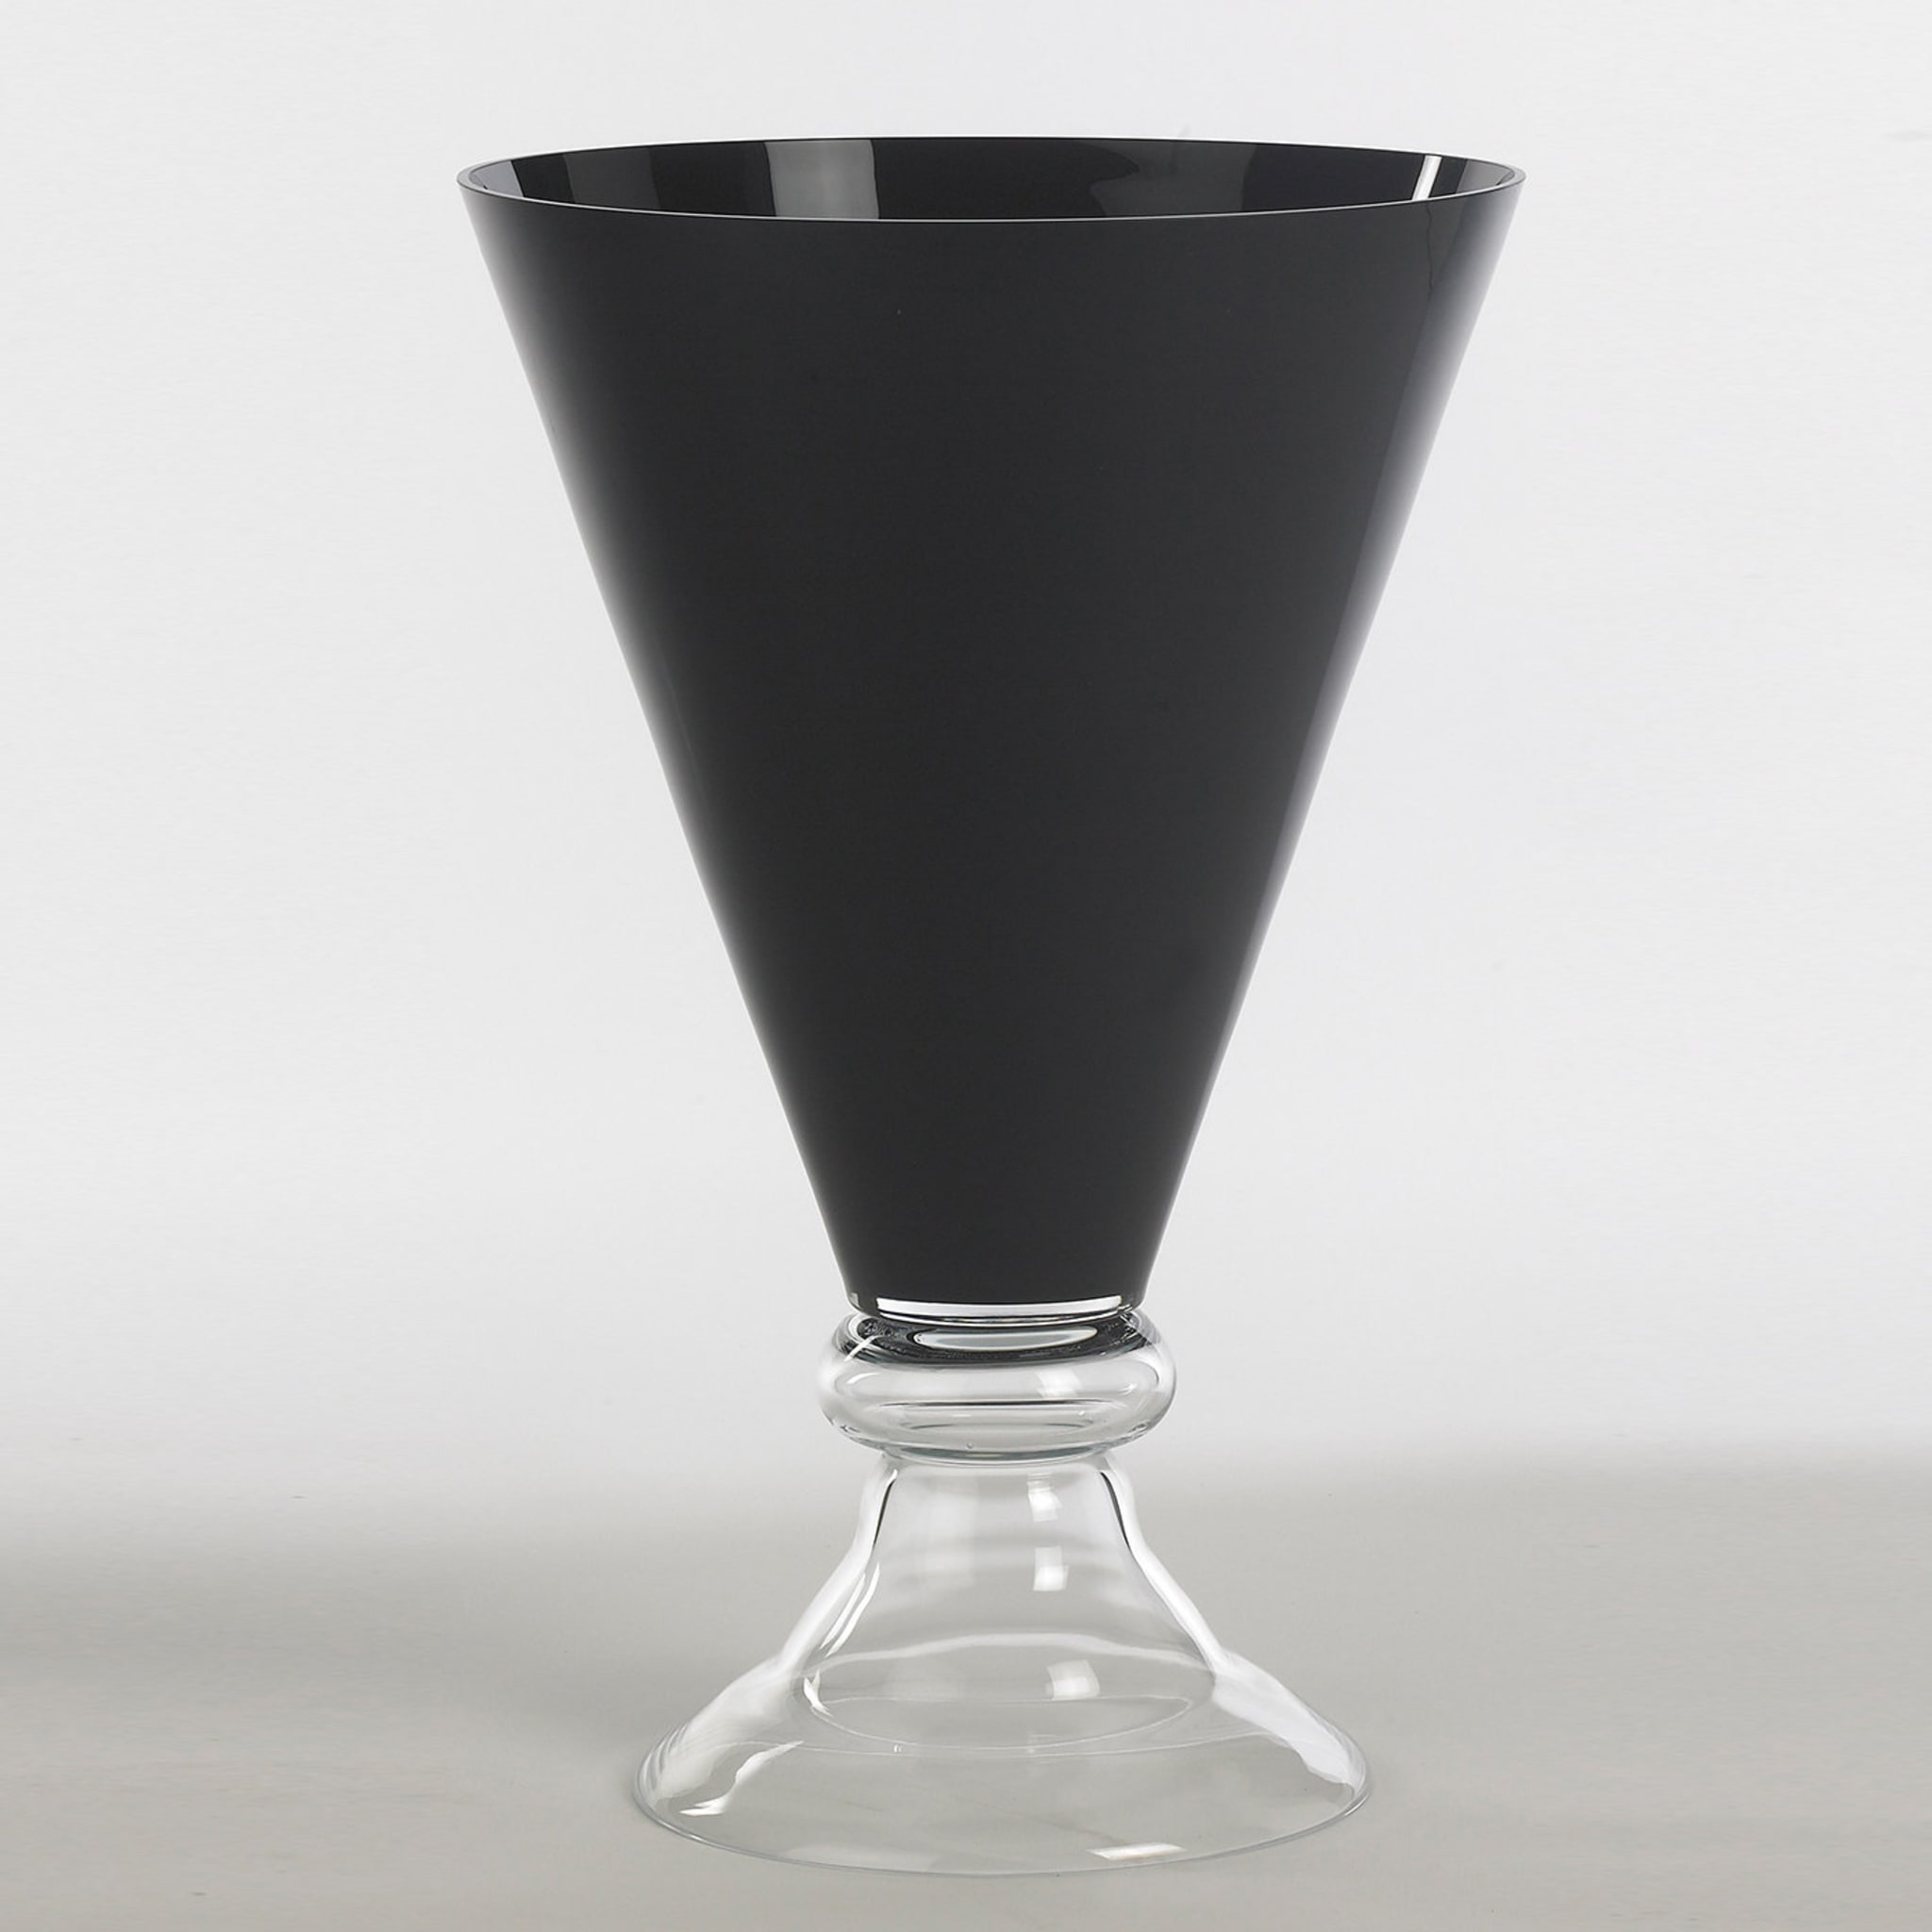 Nouveau vase romantique noir - Vue alternative 3